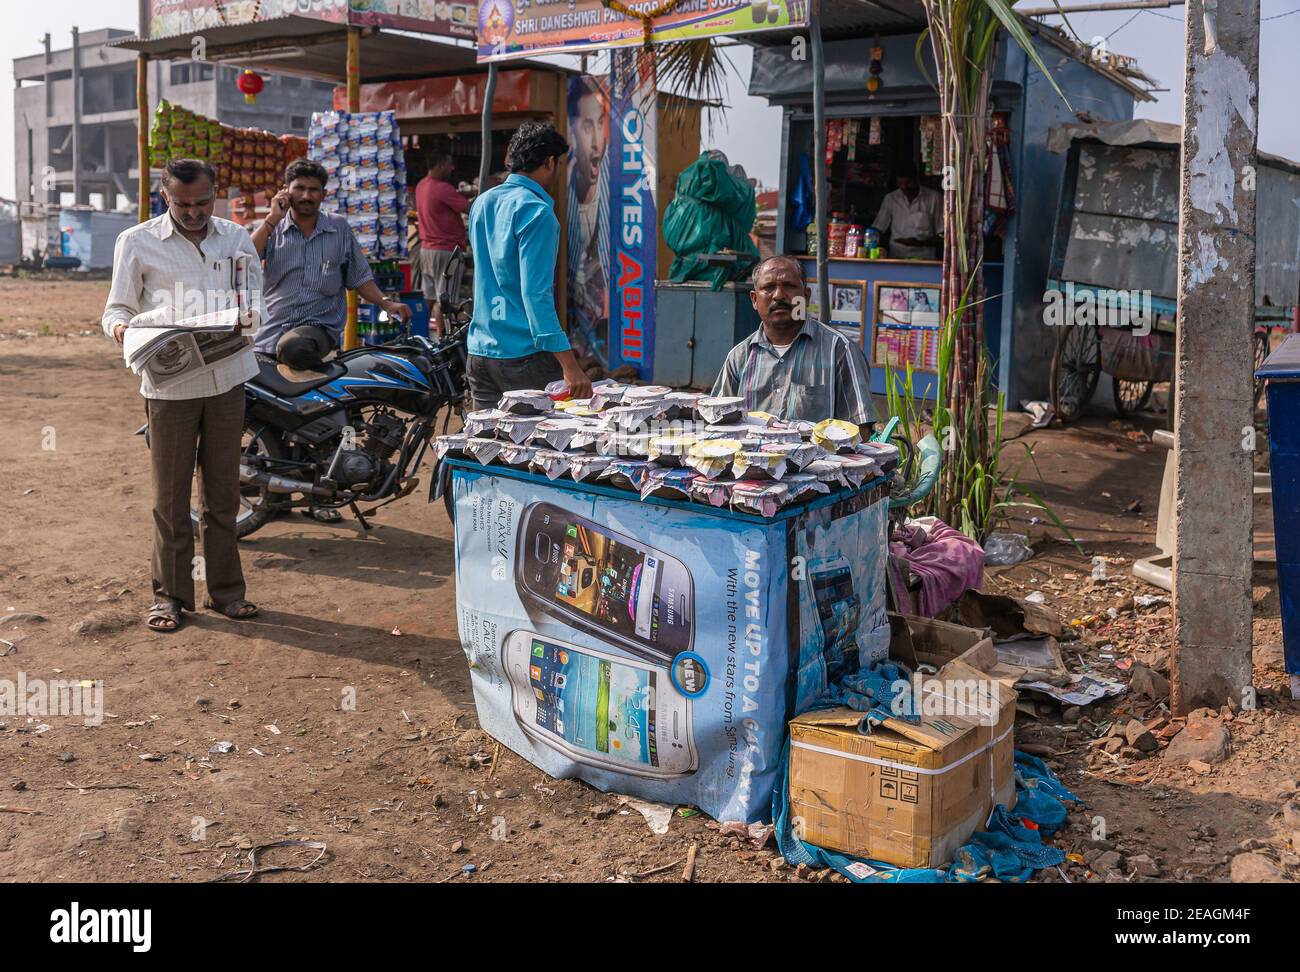 Kolhari, Karnataka, India - November 8, 2013: Roadside booth where male vendor sells home-made small cups of Chhena, a curd style resembling yoghurt t Stock Photo